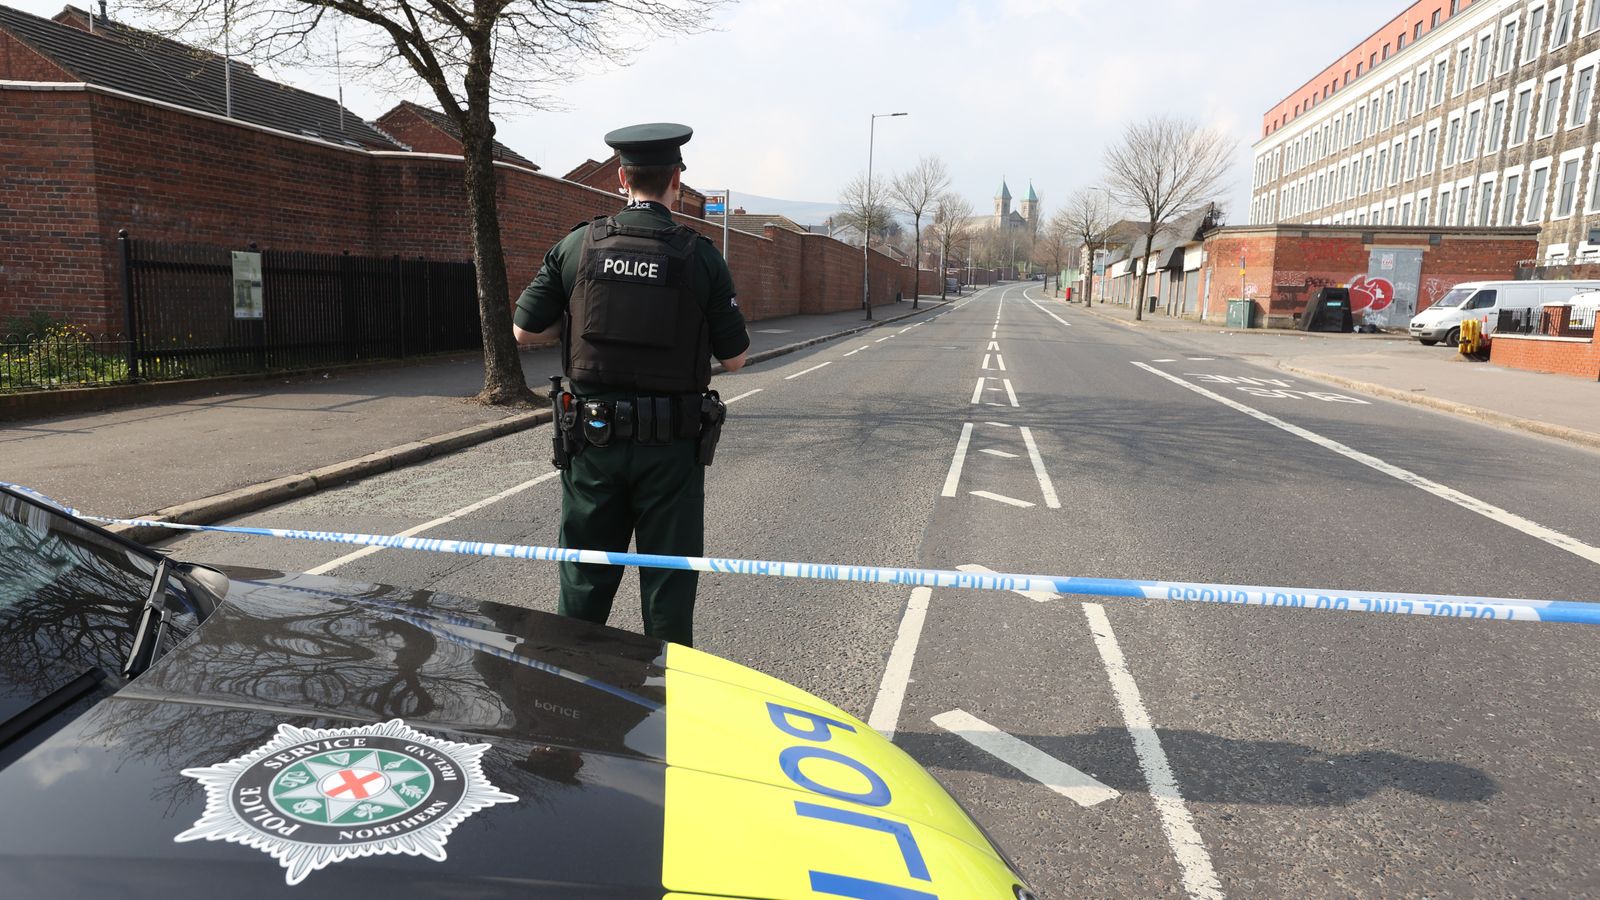 Une femme libérée sous caution après que le ministre irlandais des Affaires étrangères a quitté la scène lors d’un événement pour la paix à Belfast dans une alerte de sécurité canular |  Nouvelles du Royaume-Uni